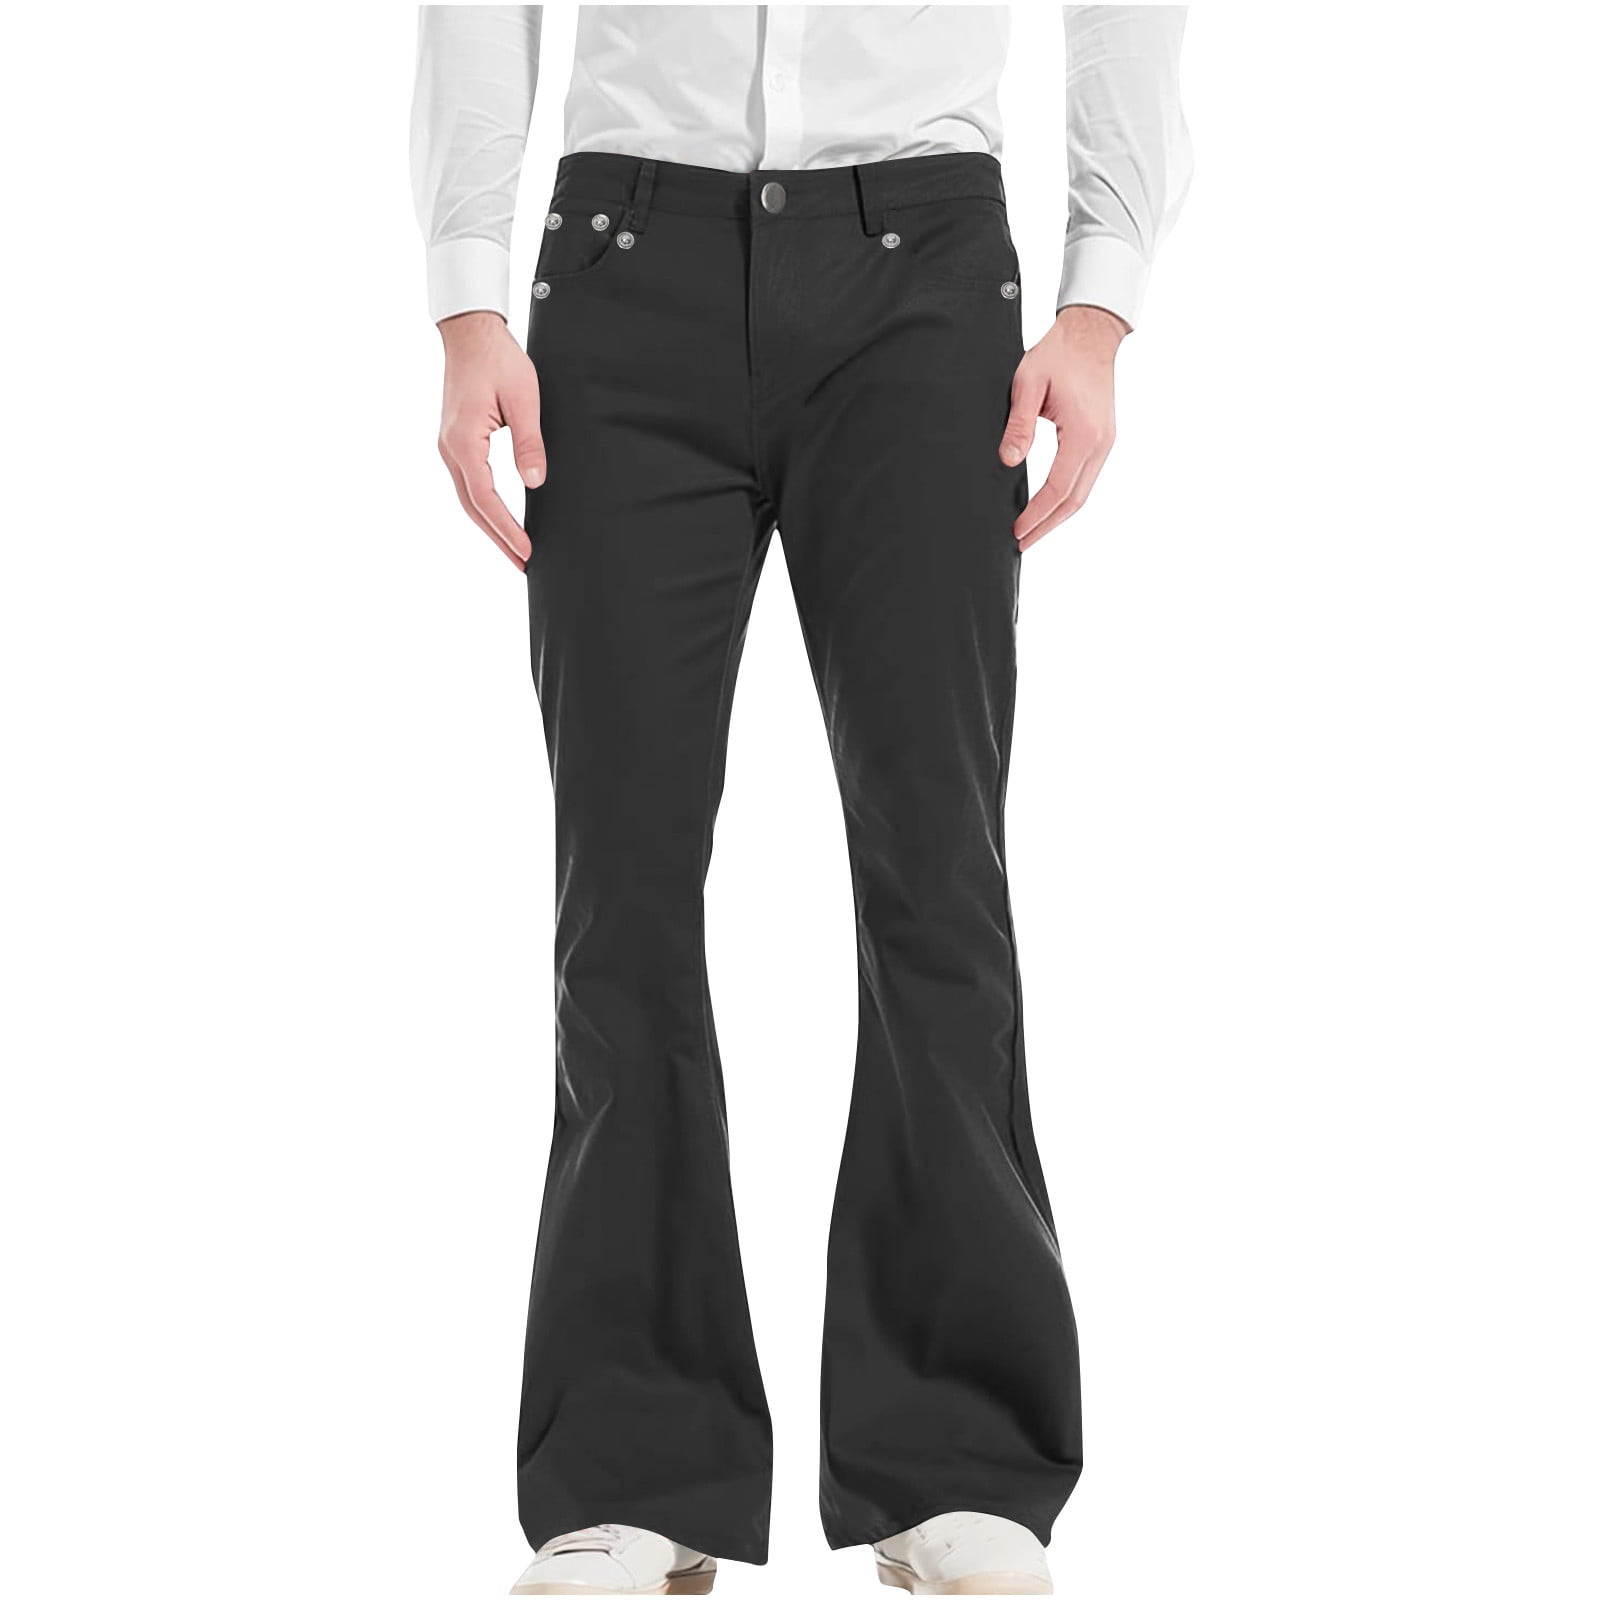 VSSSJ Men's Vintage Flared Pants Slim Fit Solid Color Button